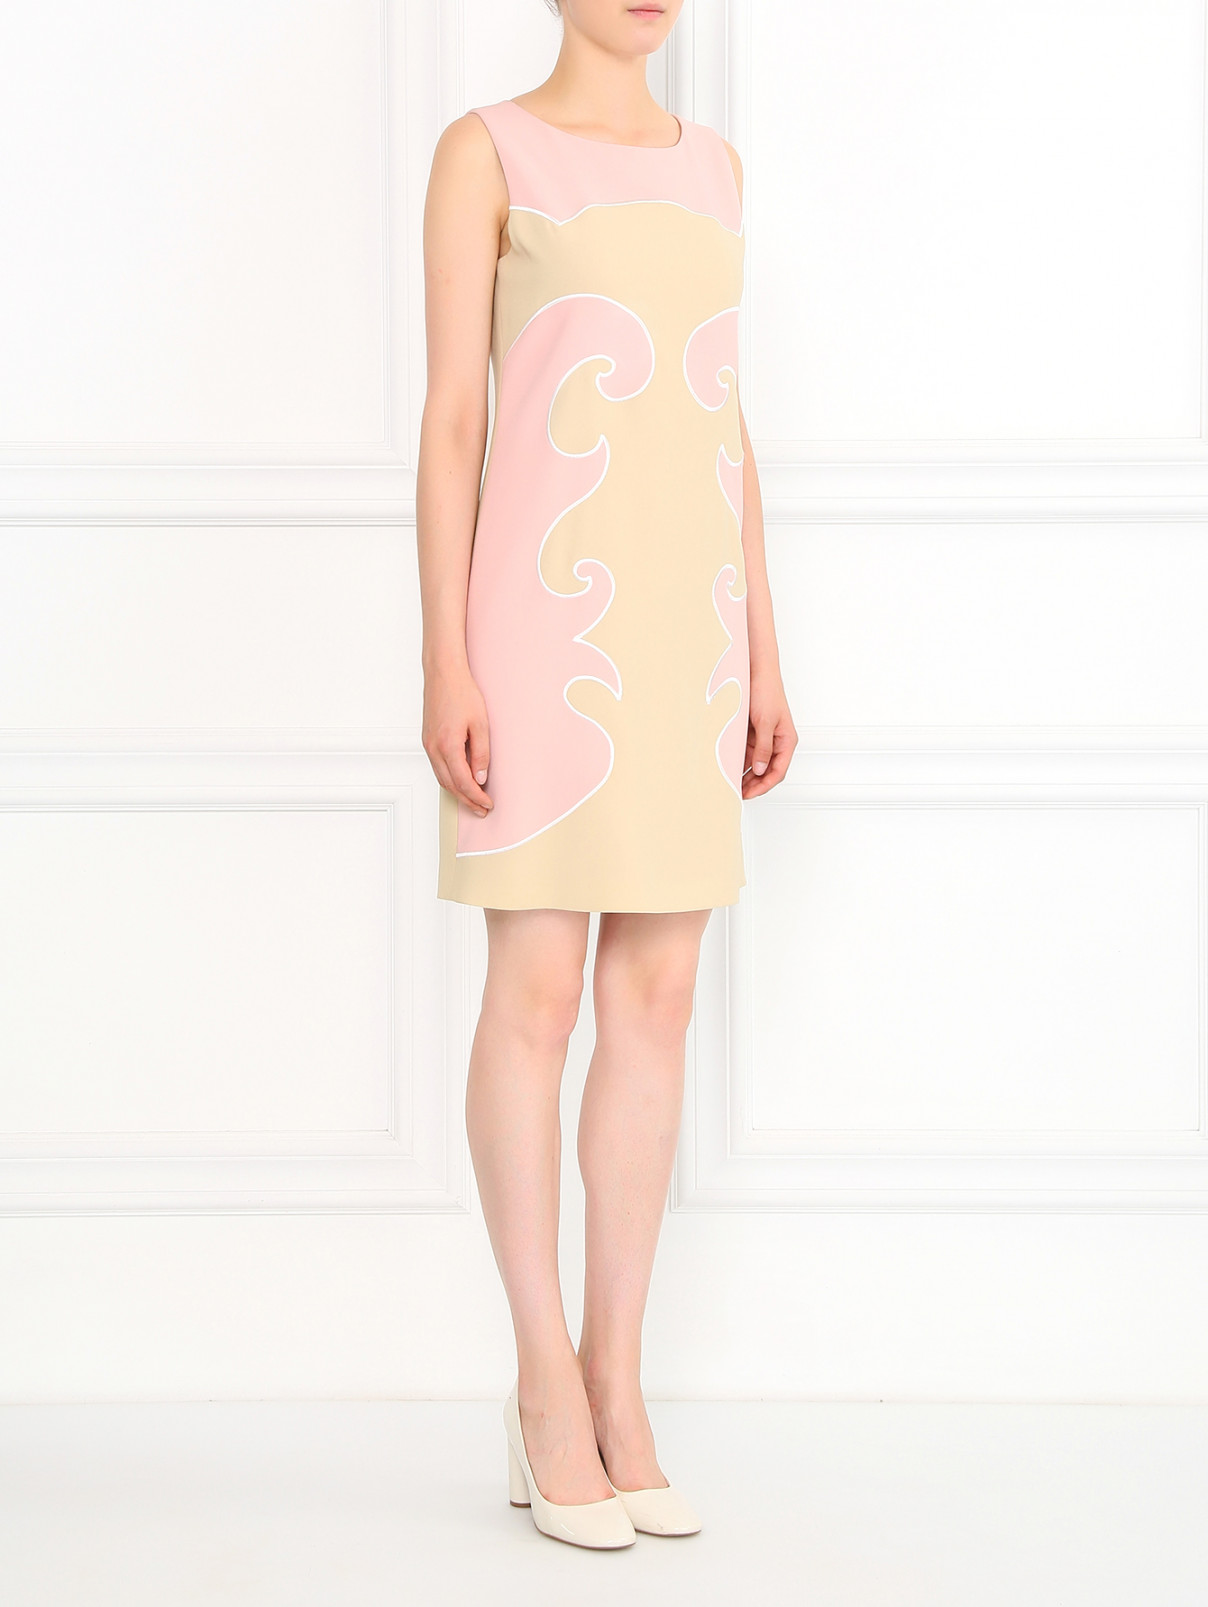 Платье-футляр с вышивкой Moschino Cheap&Chic  –  Модель Общий вид  – Цвет:  Розовый